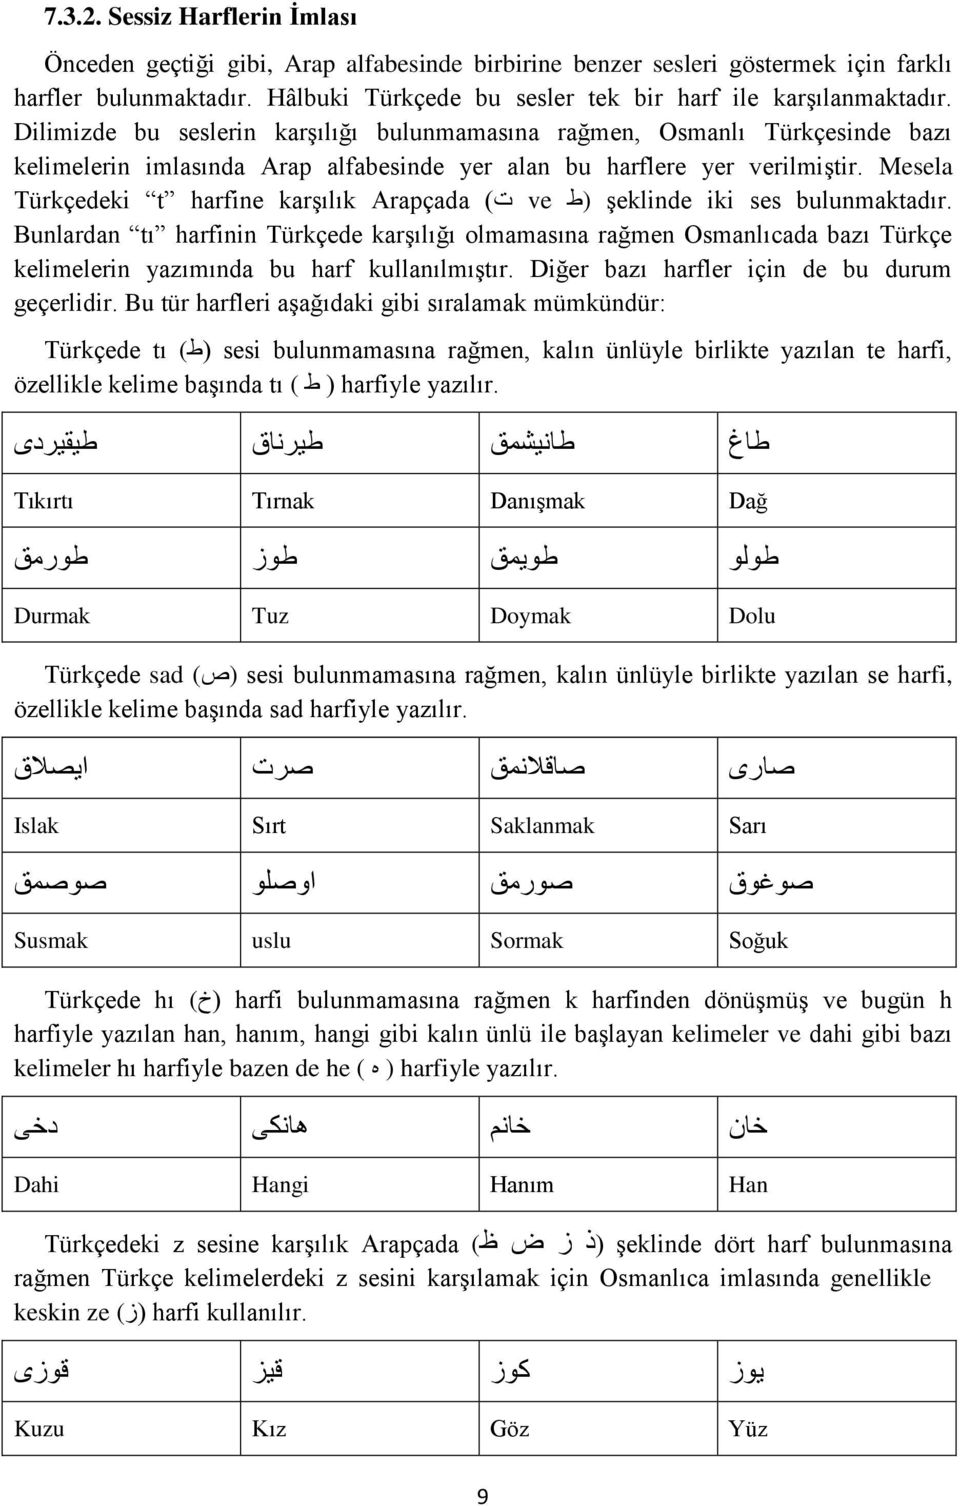 Dilimizde bu seslerin karşılığı bulunmamasına rağmen, Osmanlı Türkçesinde bazı kelimelerin imlasında Arap alfabesinde yer alan bu harflere yer verilmiştir.